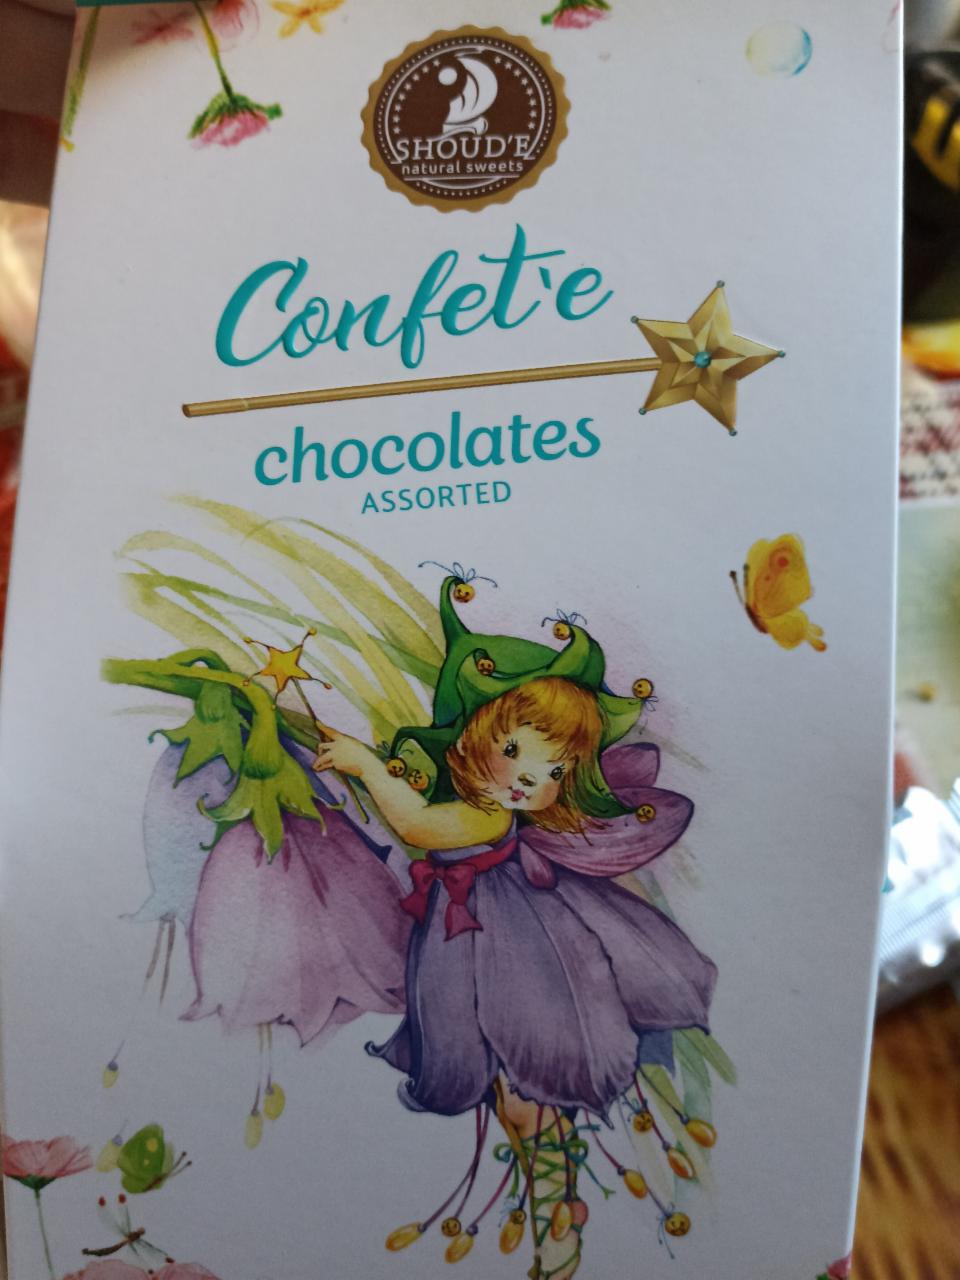 Фото - Шоколадные конфеты ассорти Confete Shoud'e